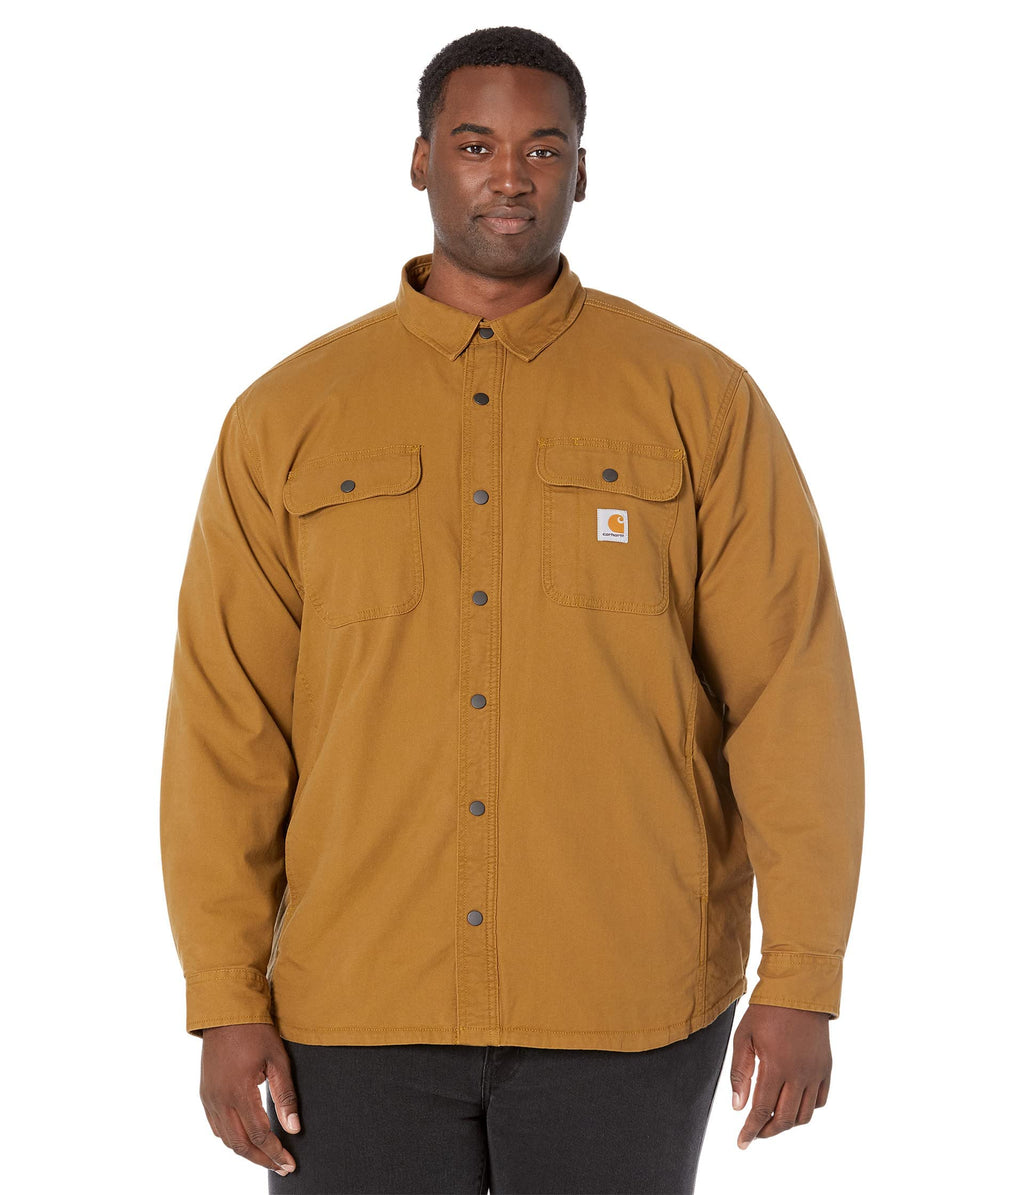 Carhartt Men's Rugged Flex Canvas Fleeced Lined Jacket